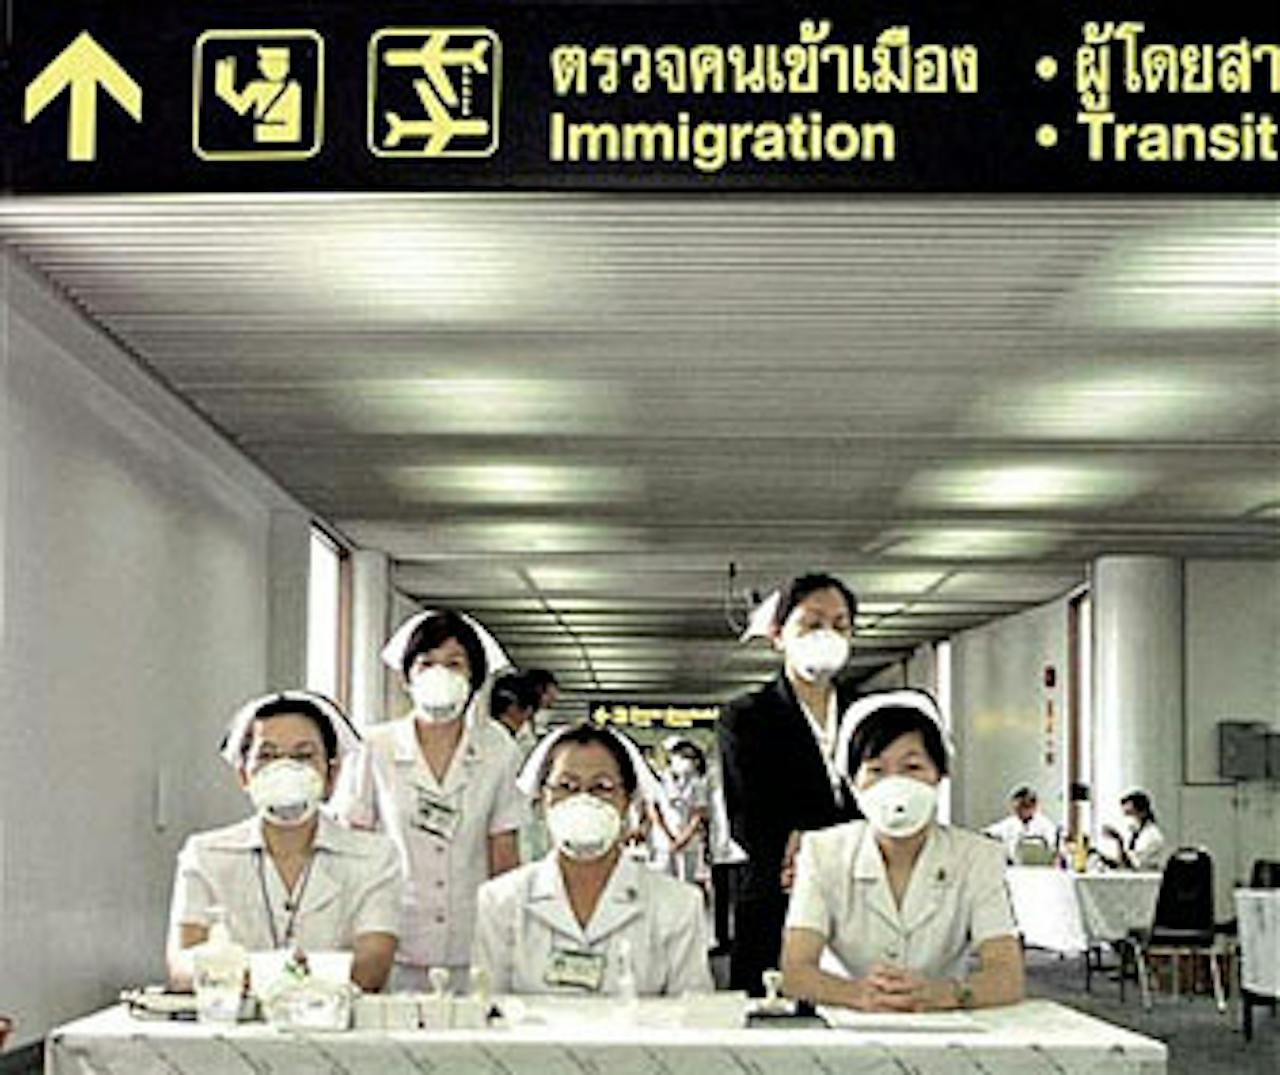 Vijf personen lopen op een luchthaven met witte mondkapjes op.